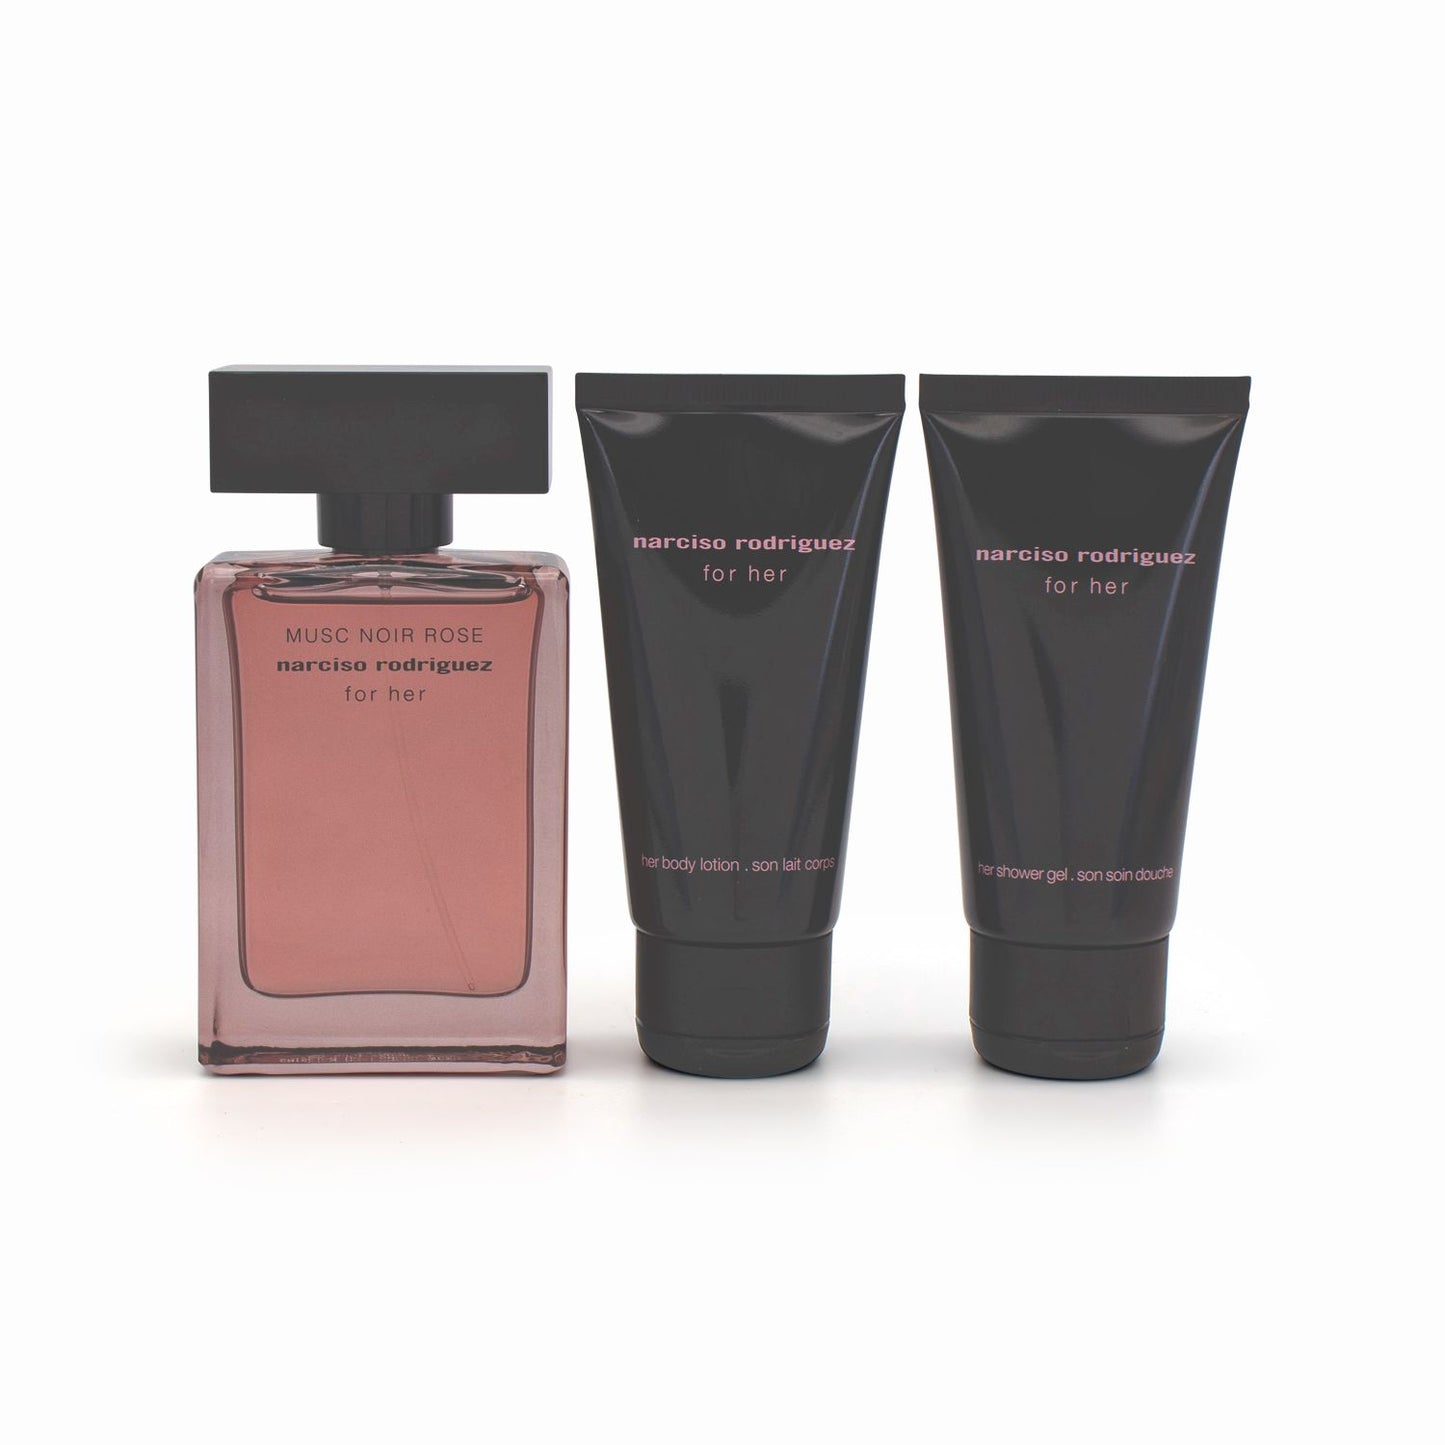 Narciso Rodriguez Musc Noir Rose For Her Eau de Parfum Gift Set - Imperfect Box